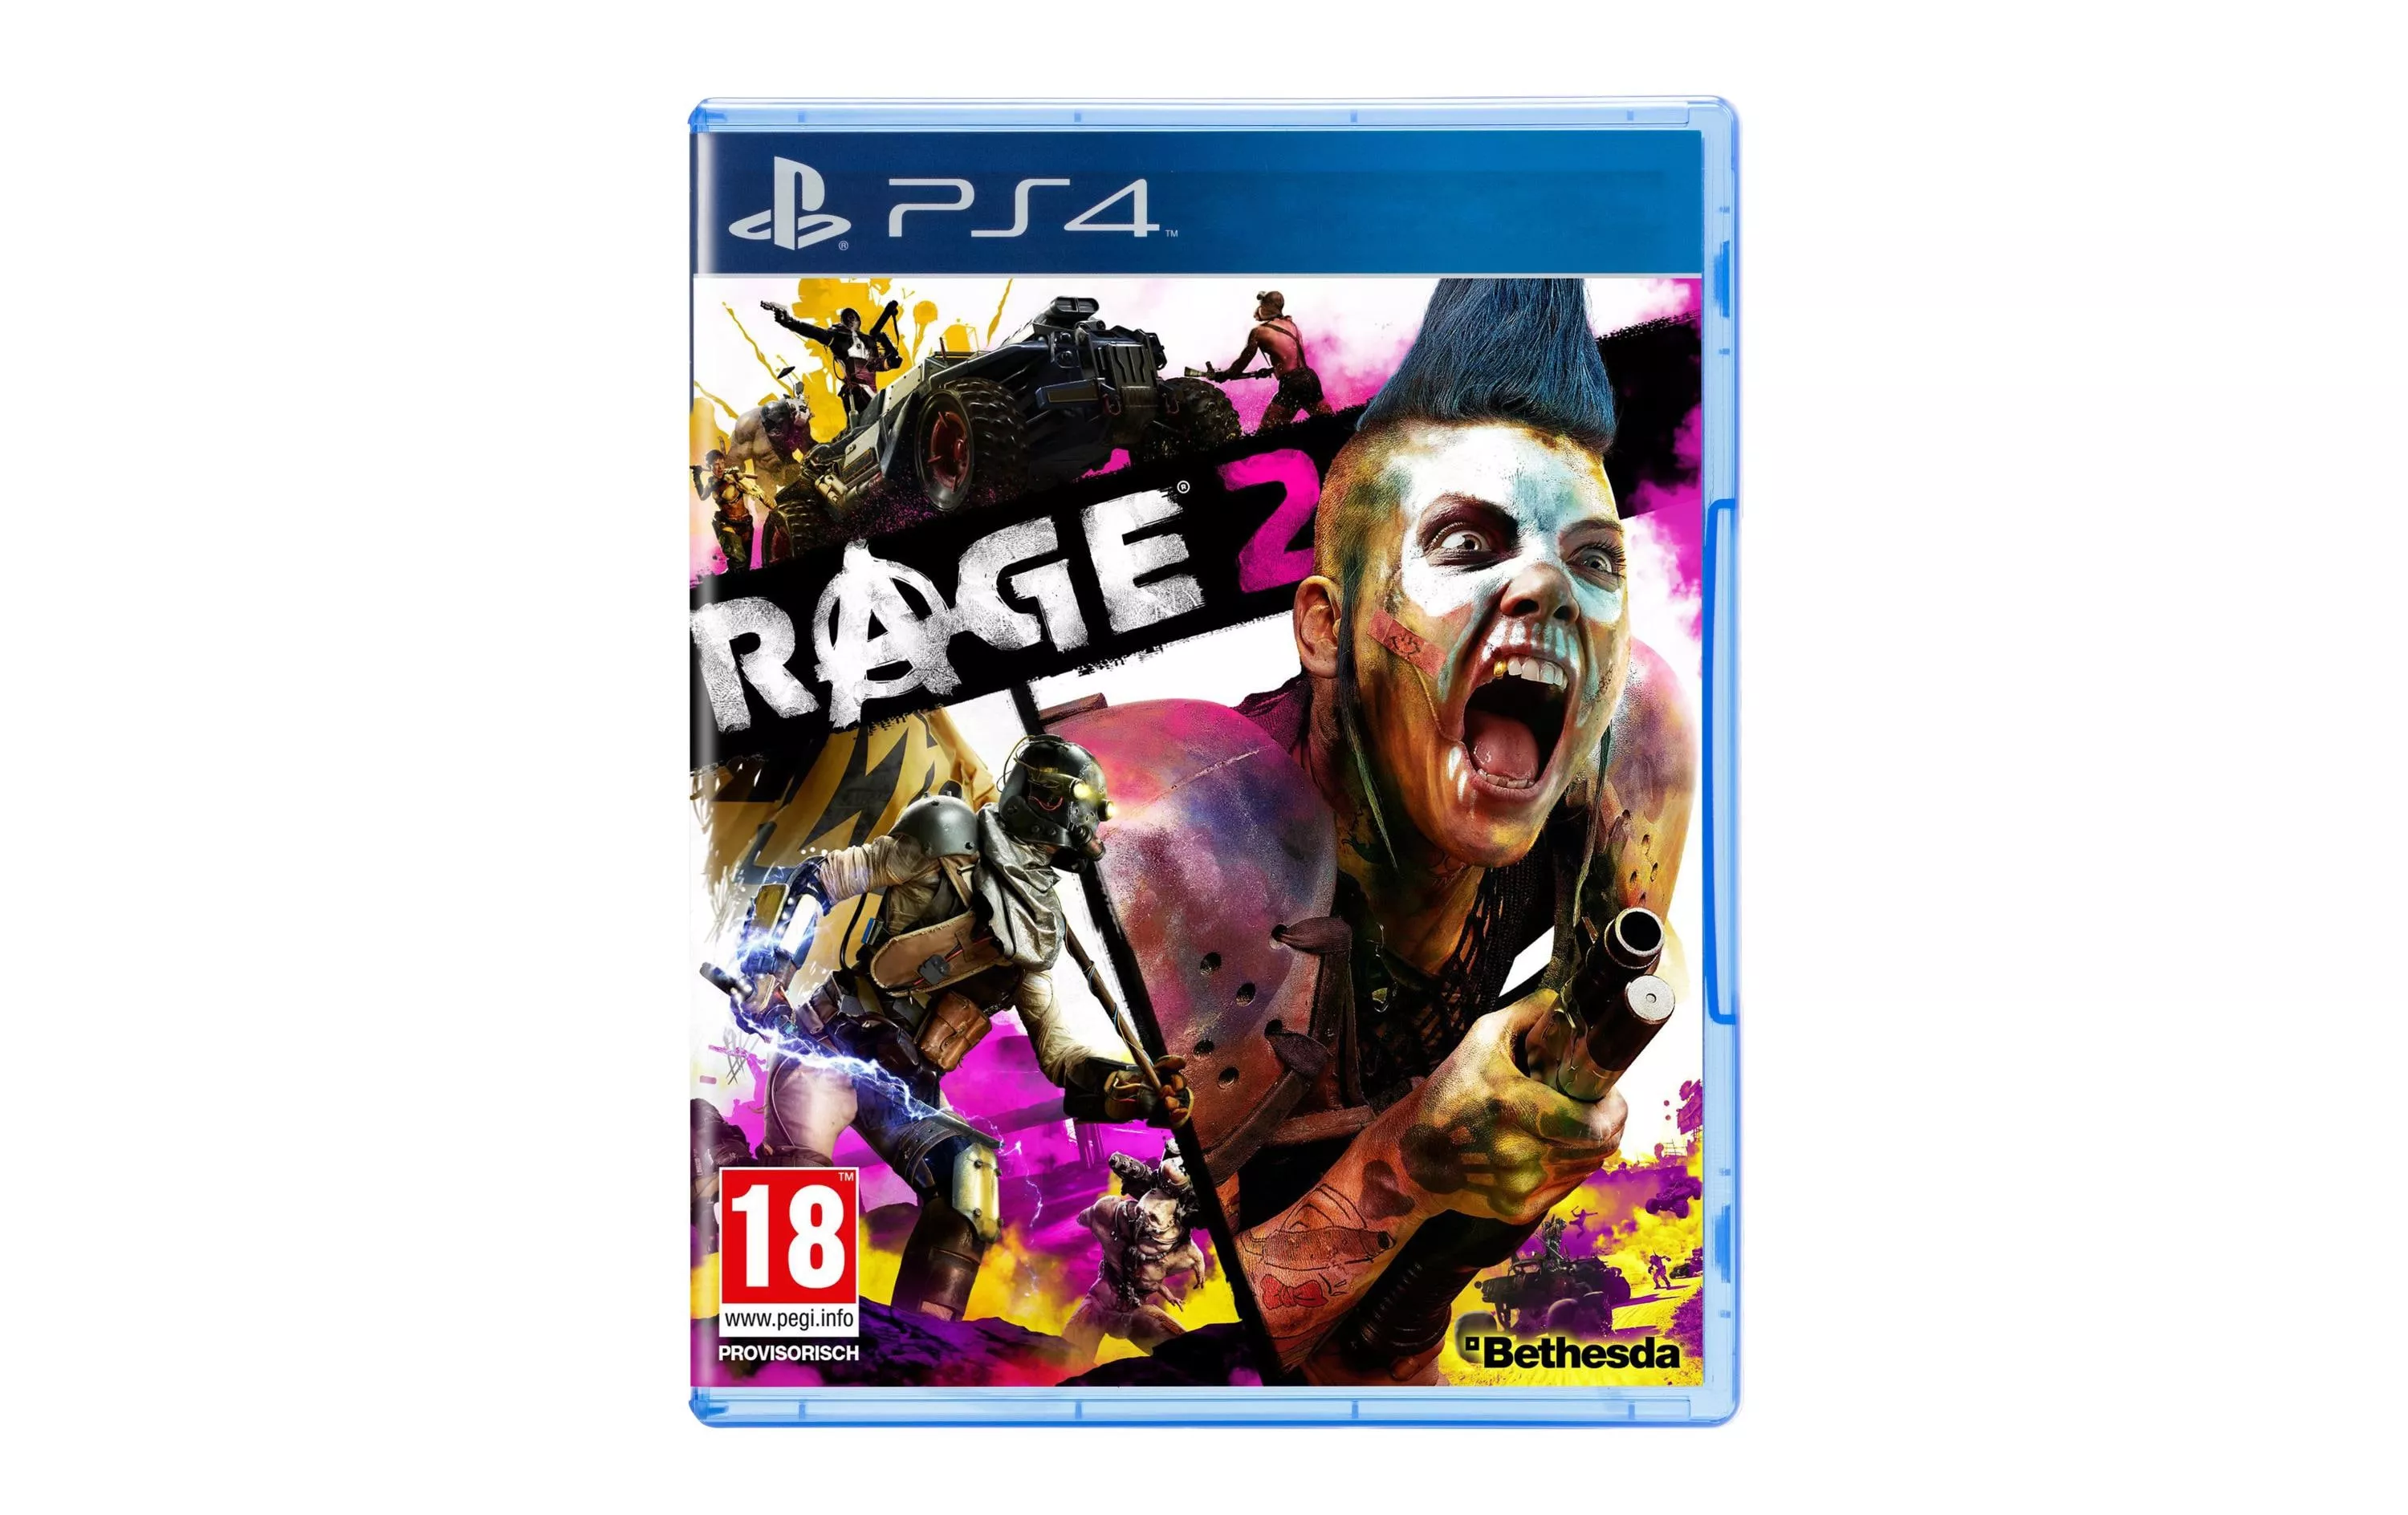 Rage 2